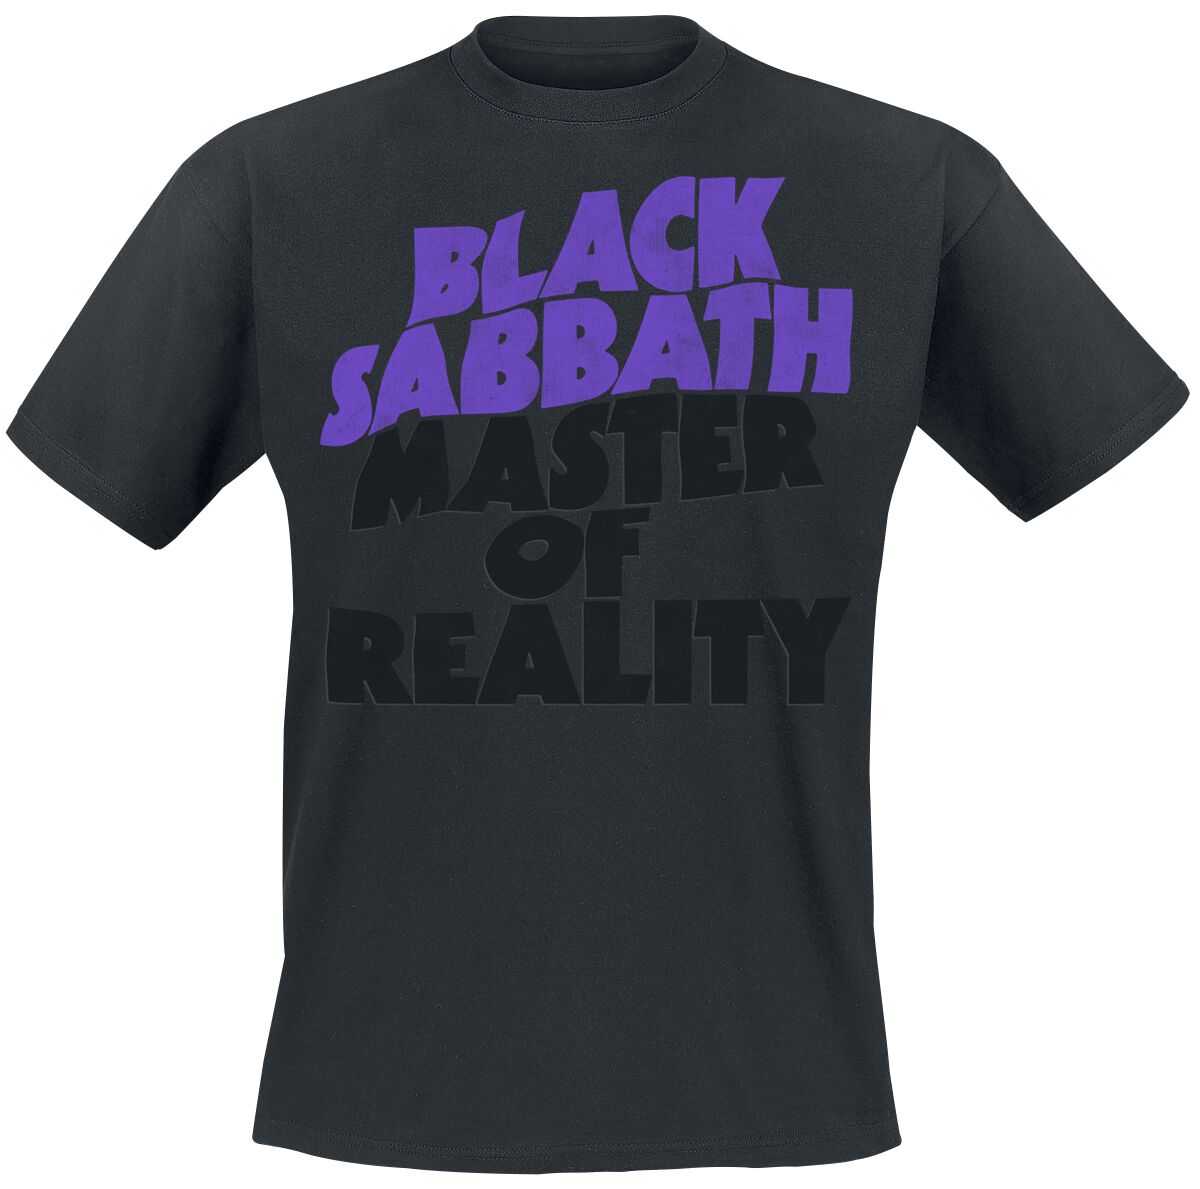 Black Sabbath T-Shirt - Master Of Reality Tracklist - M bis XXL - für Männer - Größe M - schwarz  - Lizenziertes Merchandise!